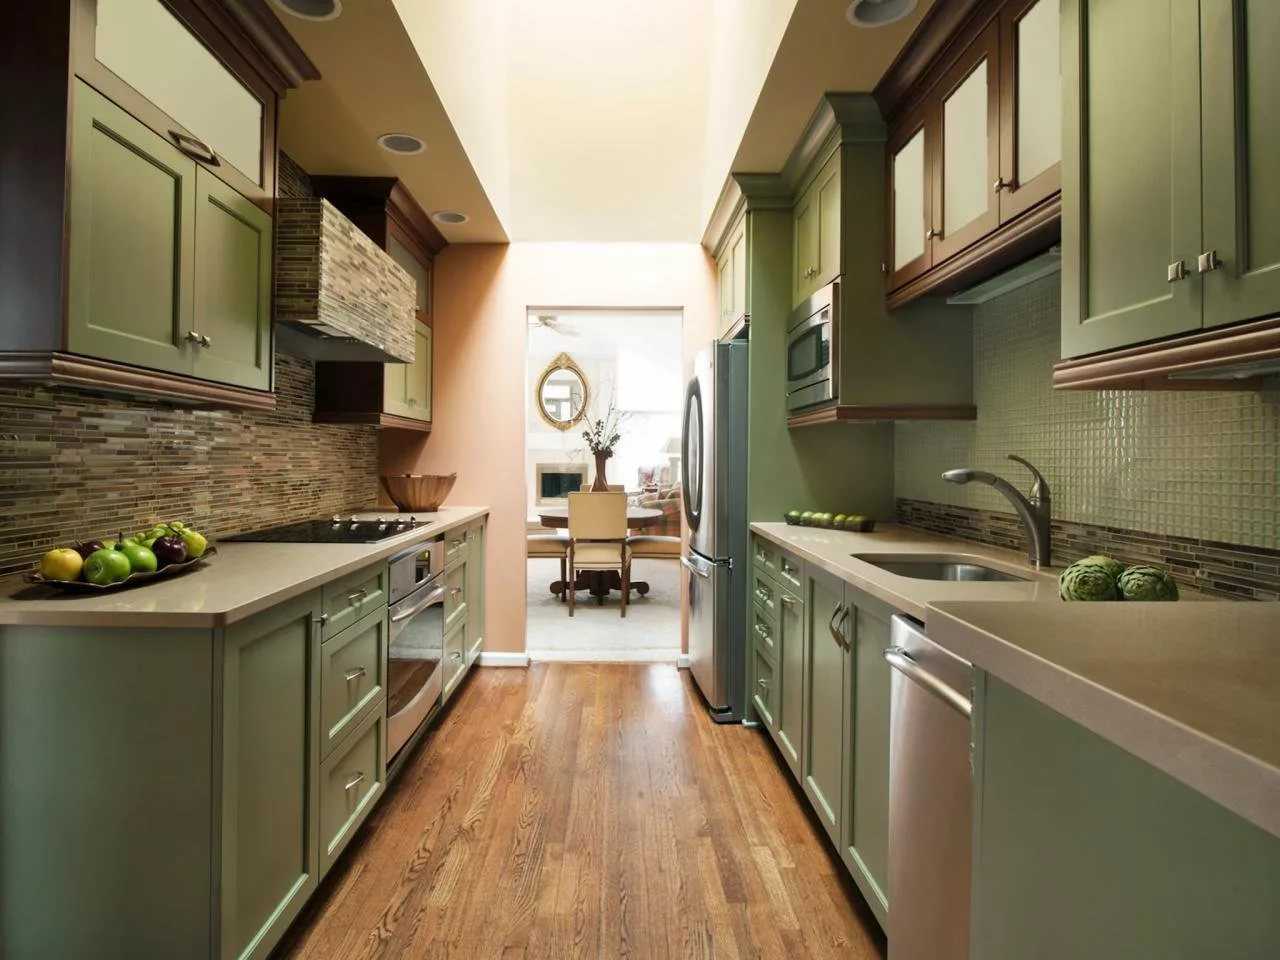 Двери на кухню: нужна ли межкомнатная дверь на кухне, требования к установке